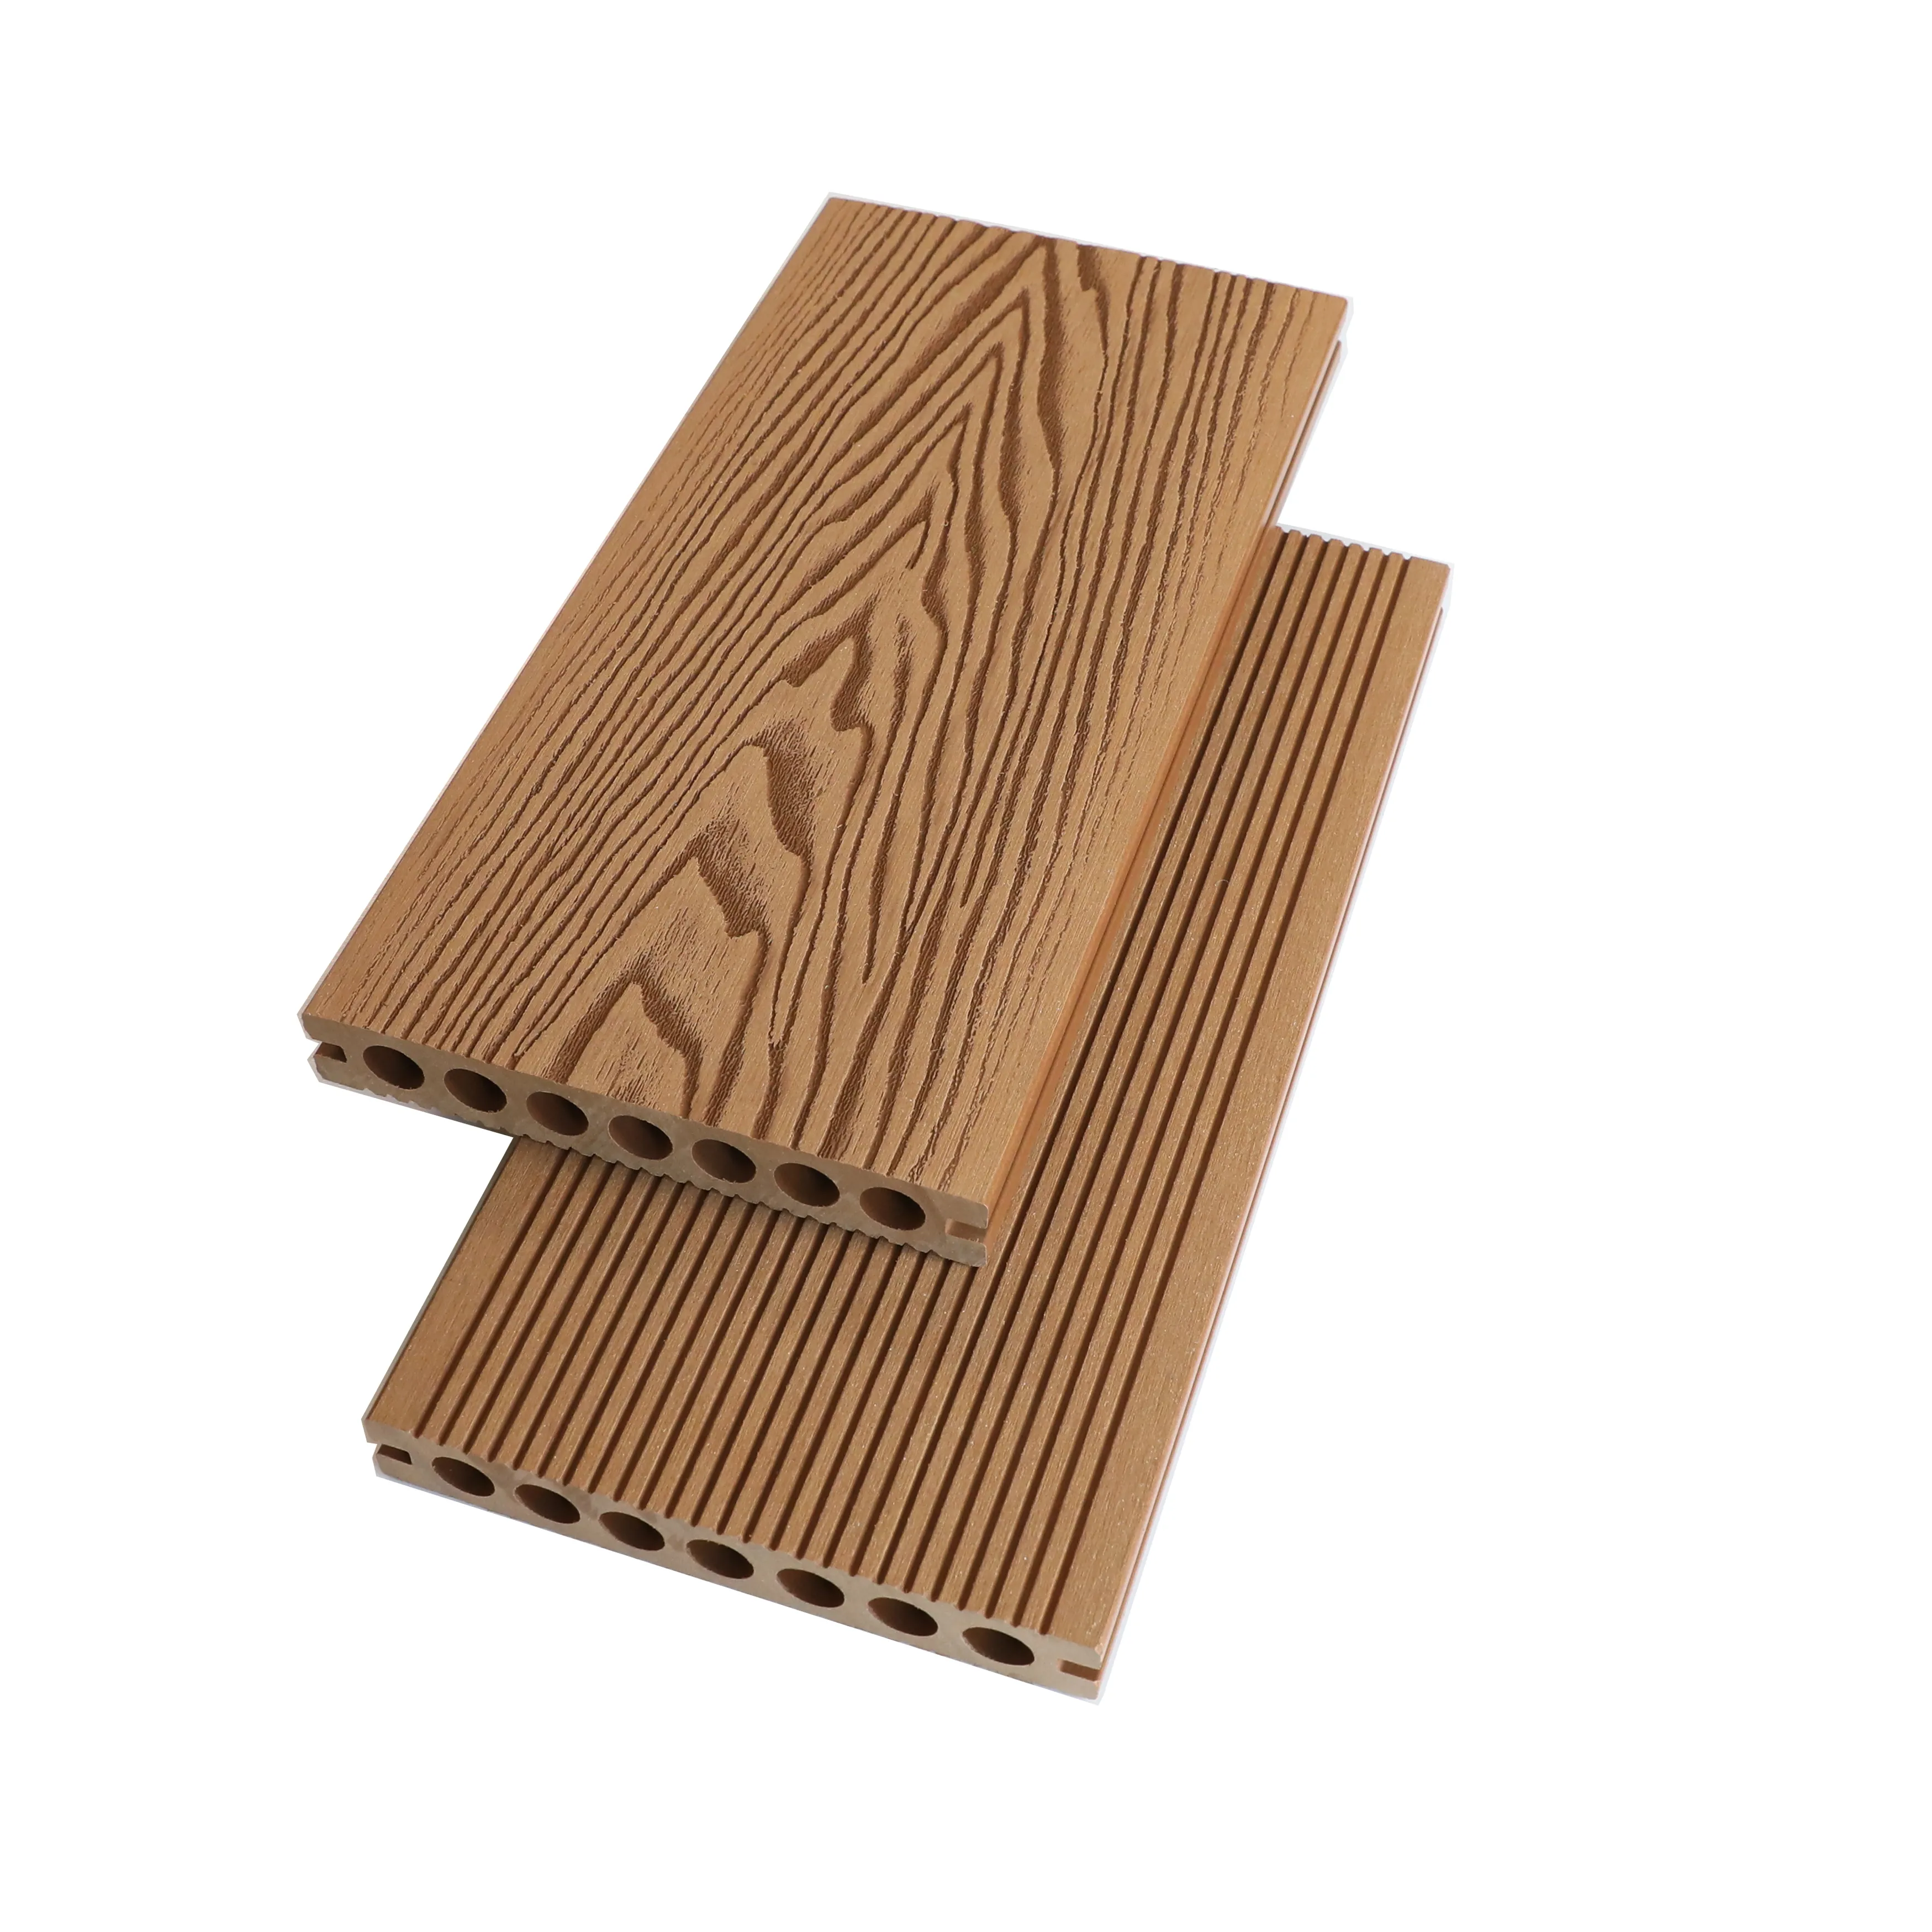 Decking grigio ghana teak parquet in legno duro pavimenti in legno pavimento in legno decking composito